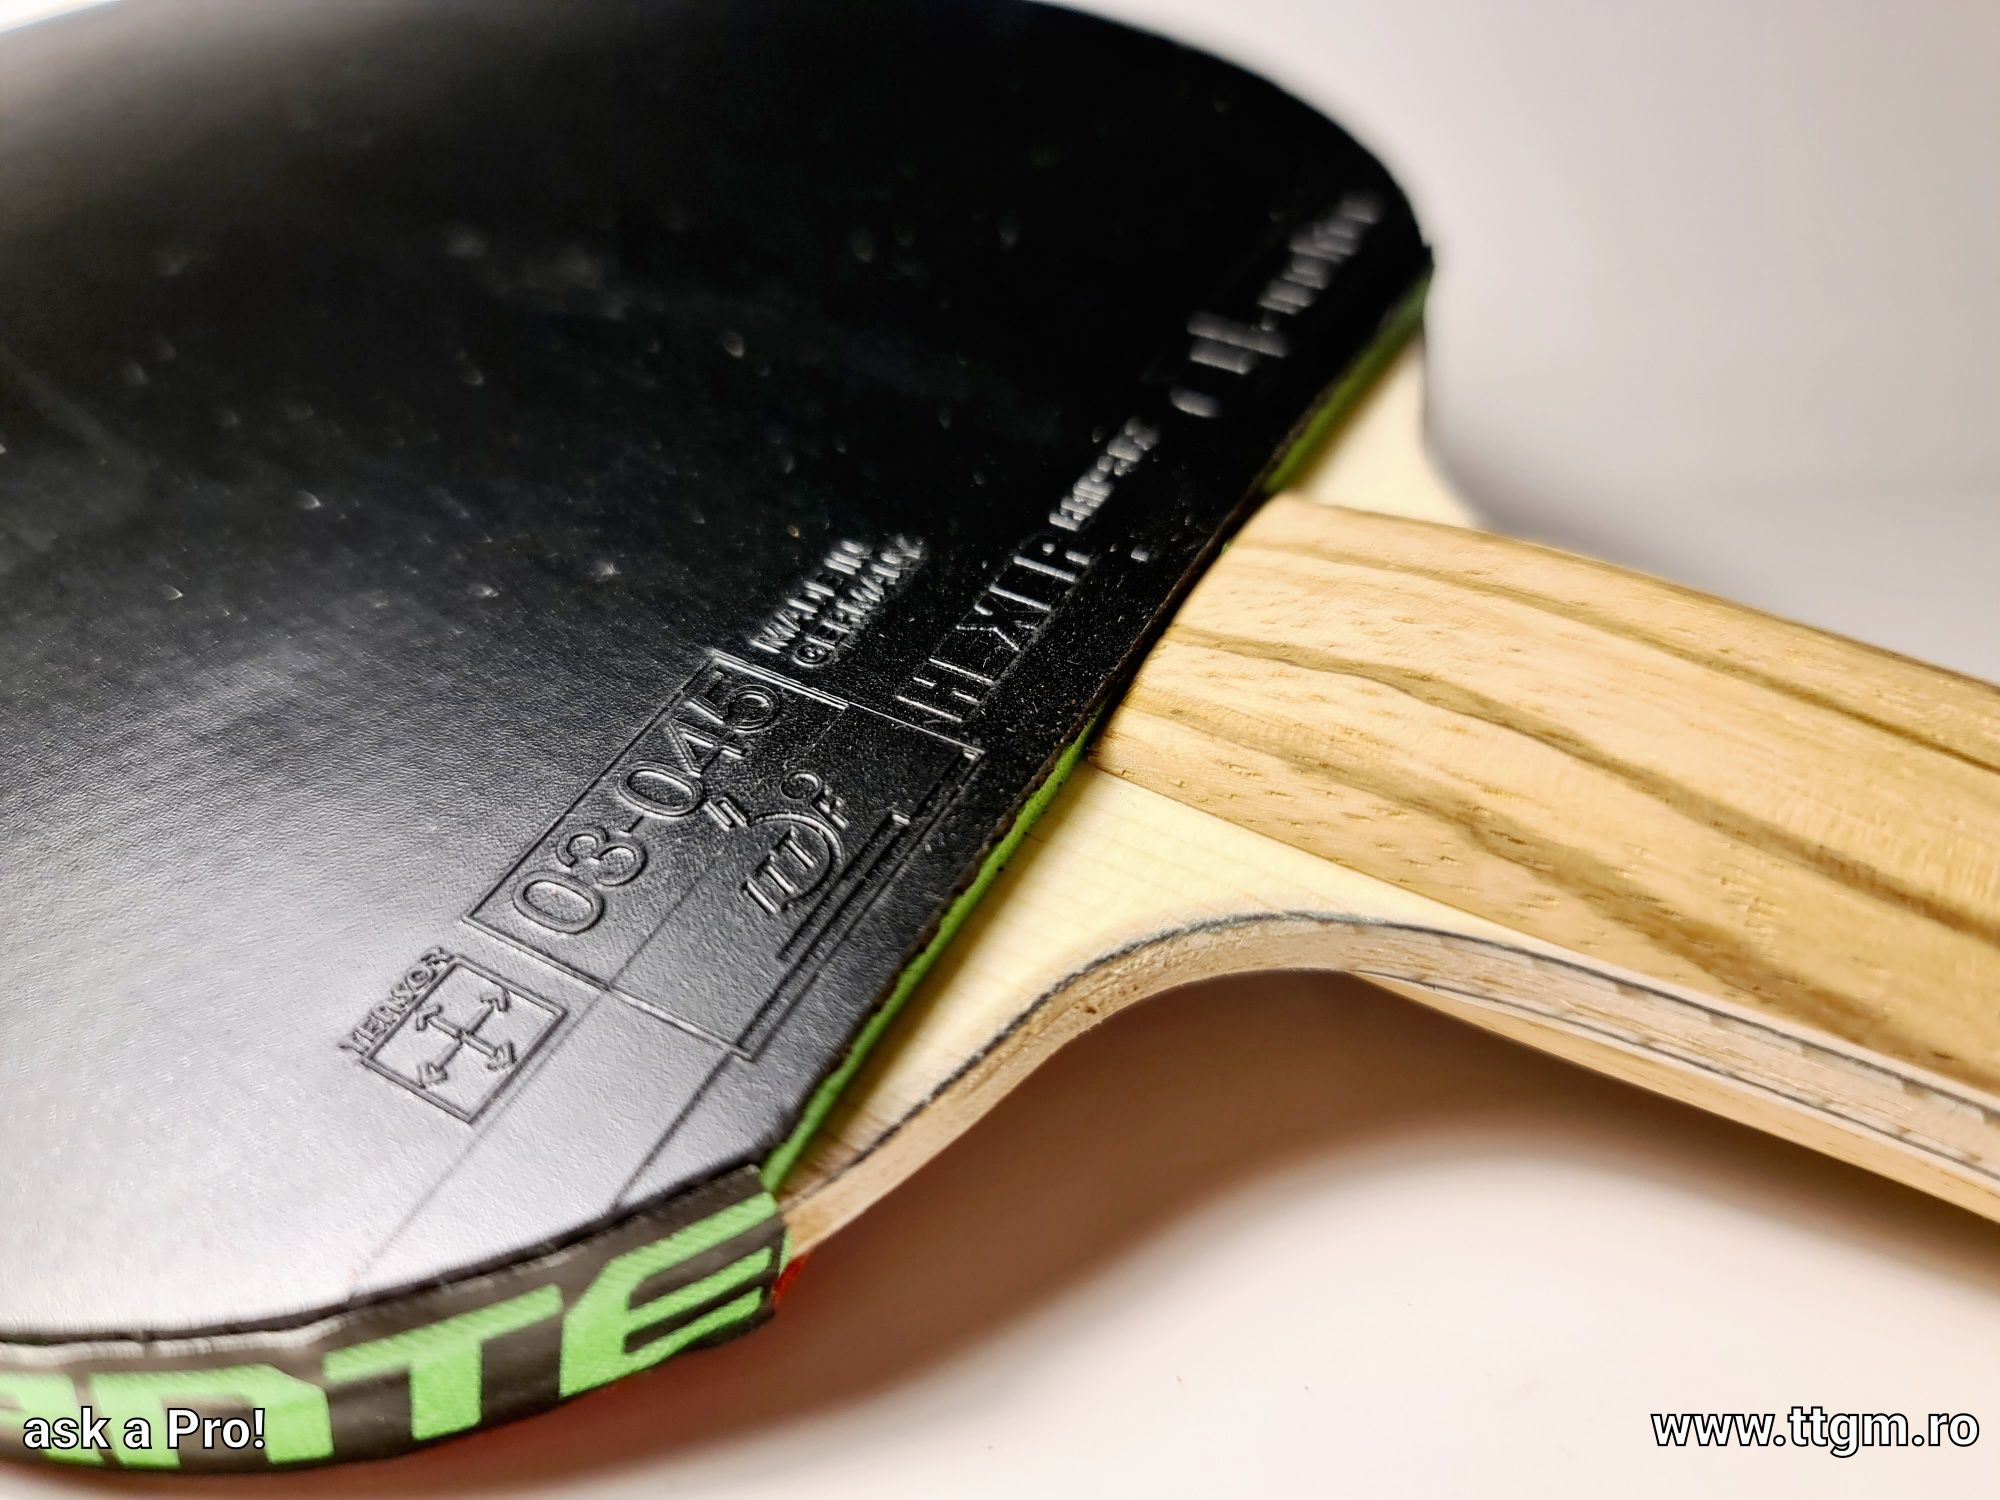 Paleta tenis de masa profesionala (ping pong) ligna/andro hexer